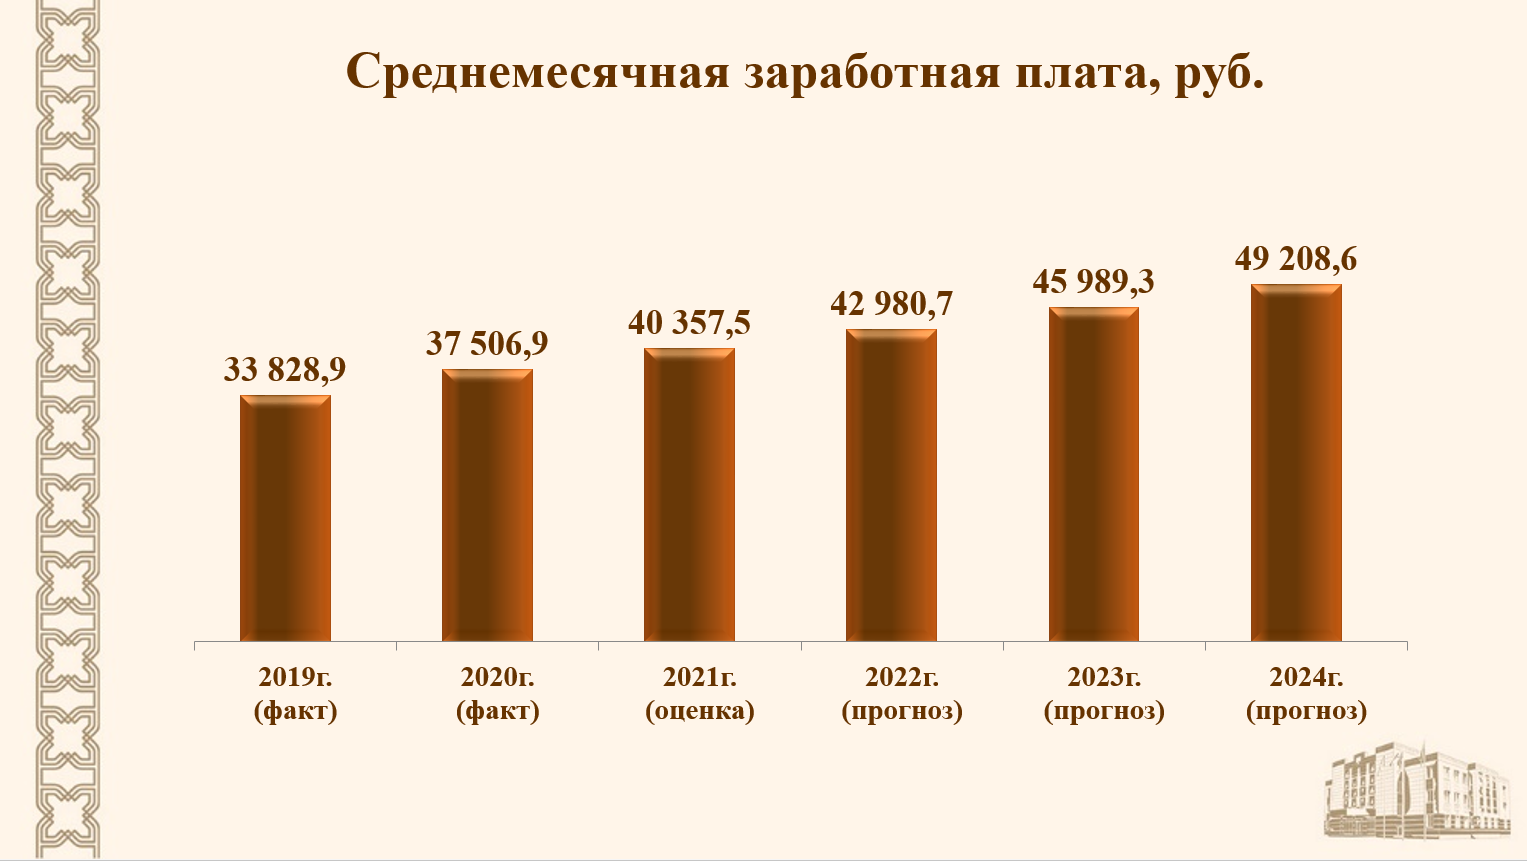 Процент повышения зарплаты в 2024 году. Заработная плата сокращение. Рост зарплаты. Татарстан уровень безработицы 2020 год. Снижение заработной платы 2008.